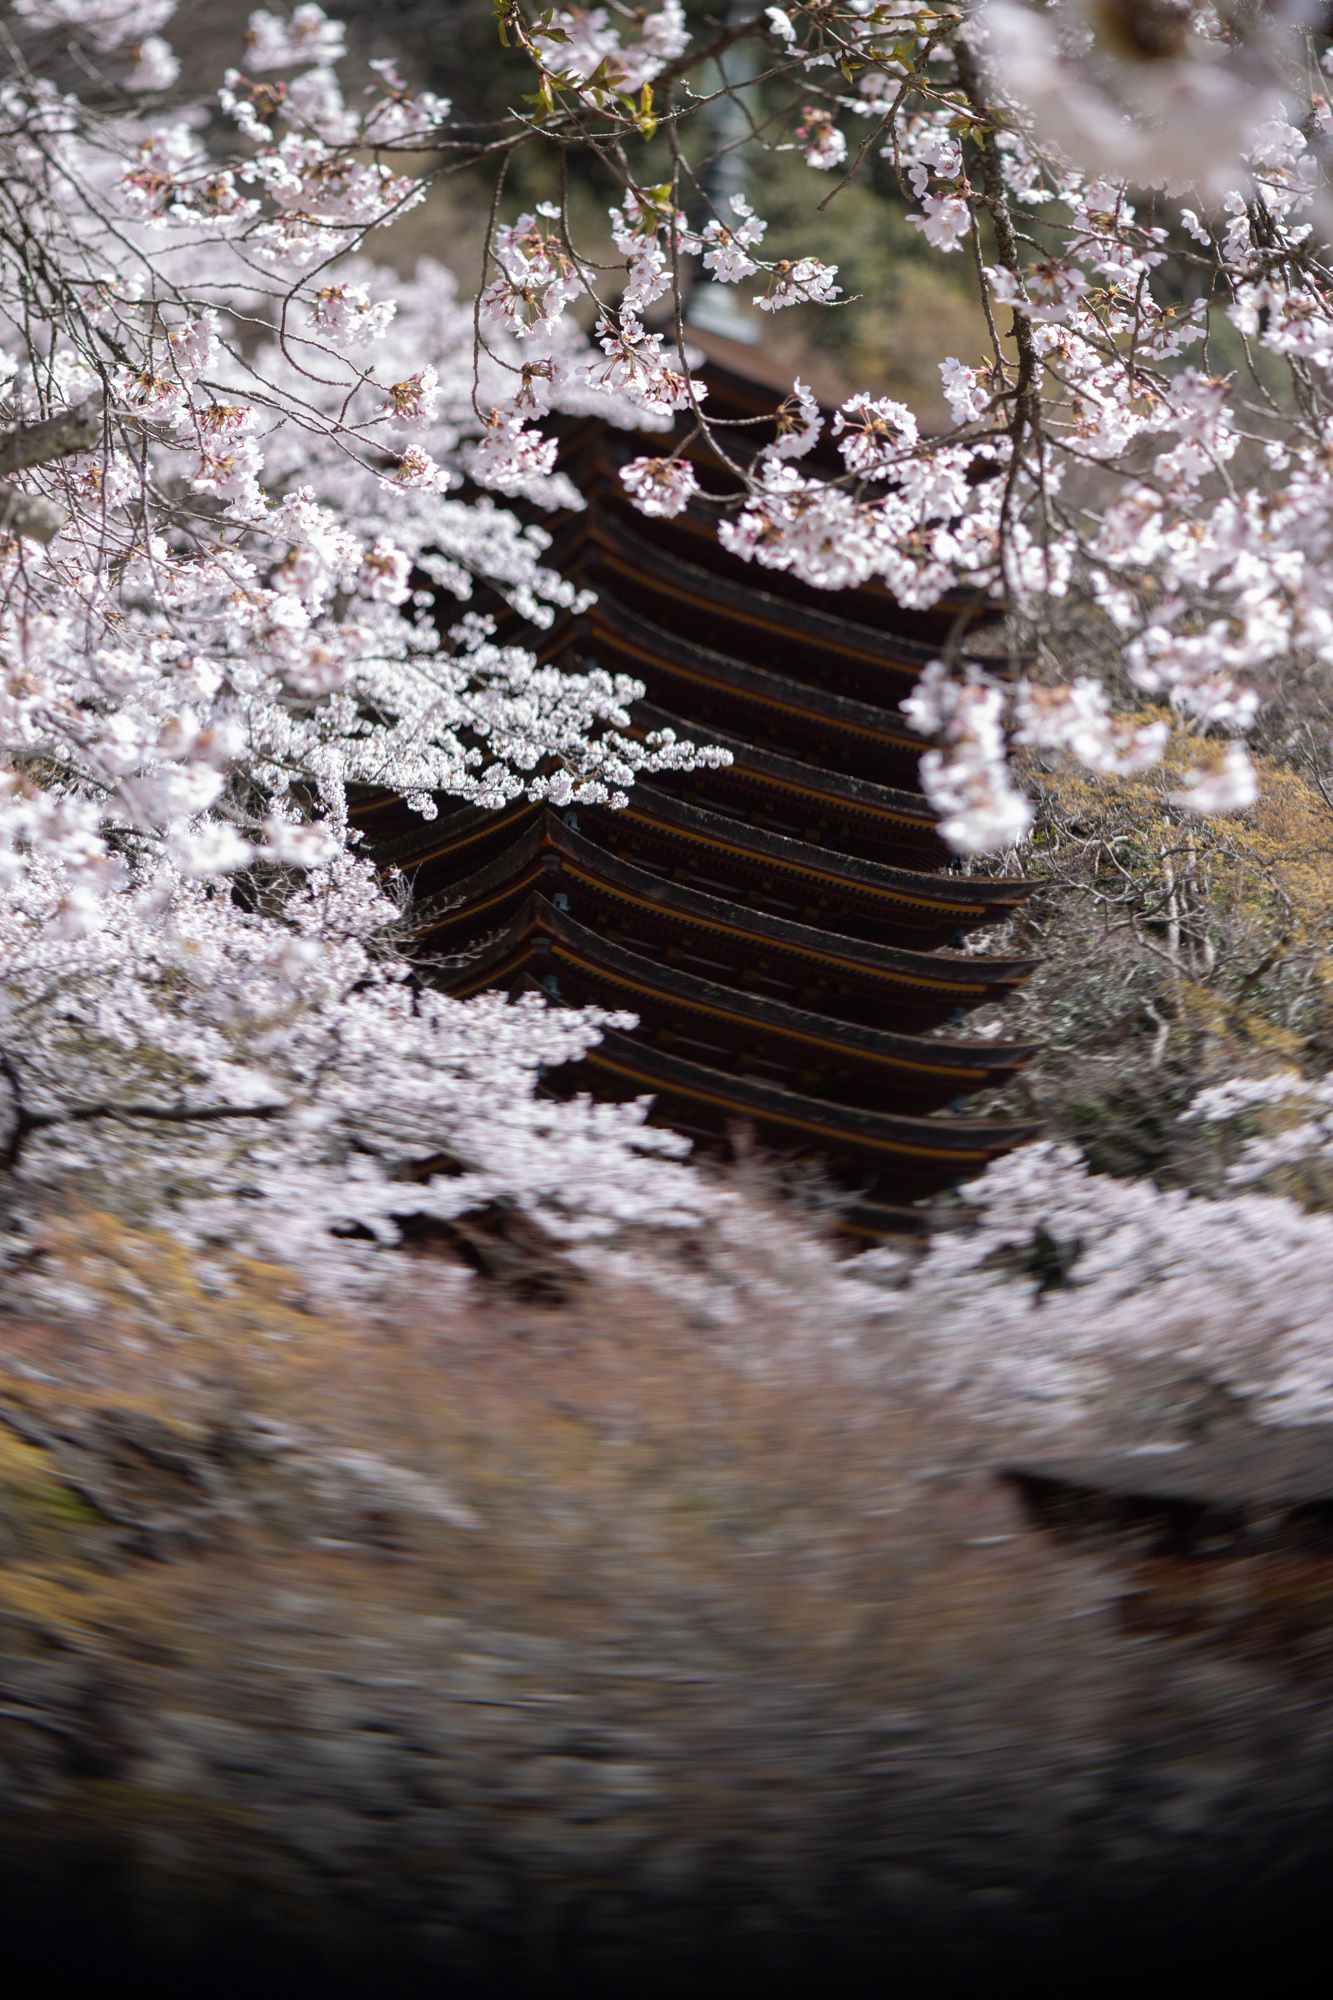 寒の戻りのために例年より遅く満開を迎えた桜の花の下で、多武峰談山能が始まる。